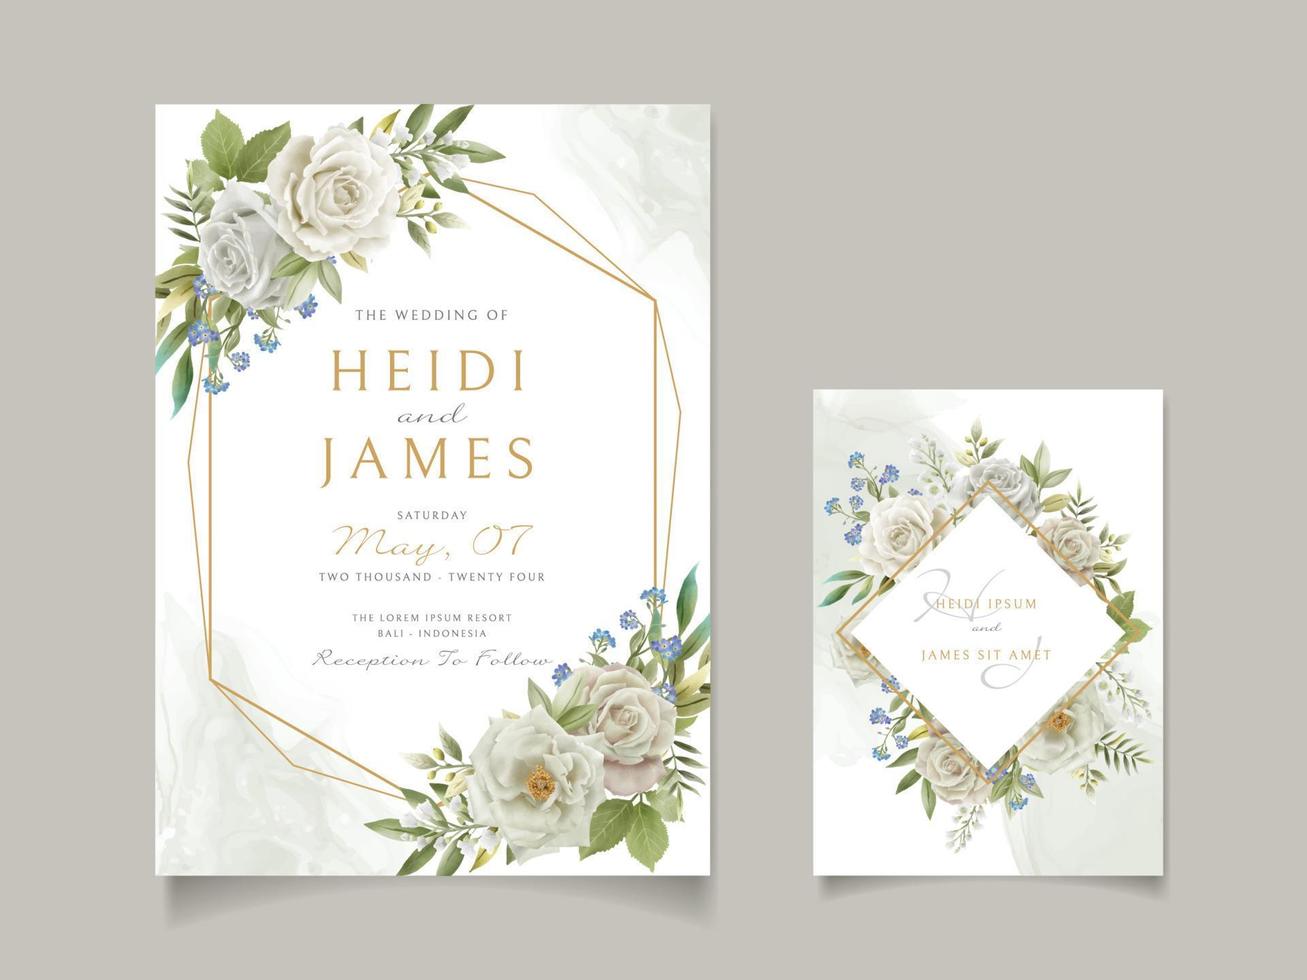 invitation de mariage élégante conception de fleurs blanches vecteur